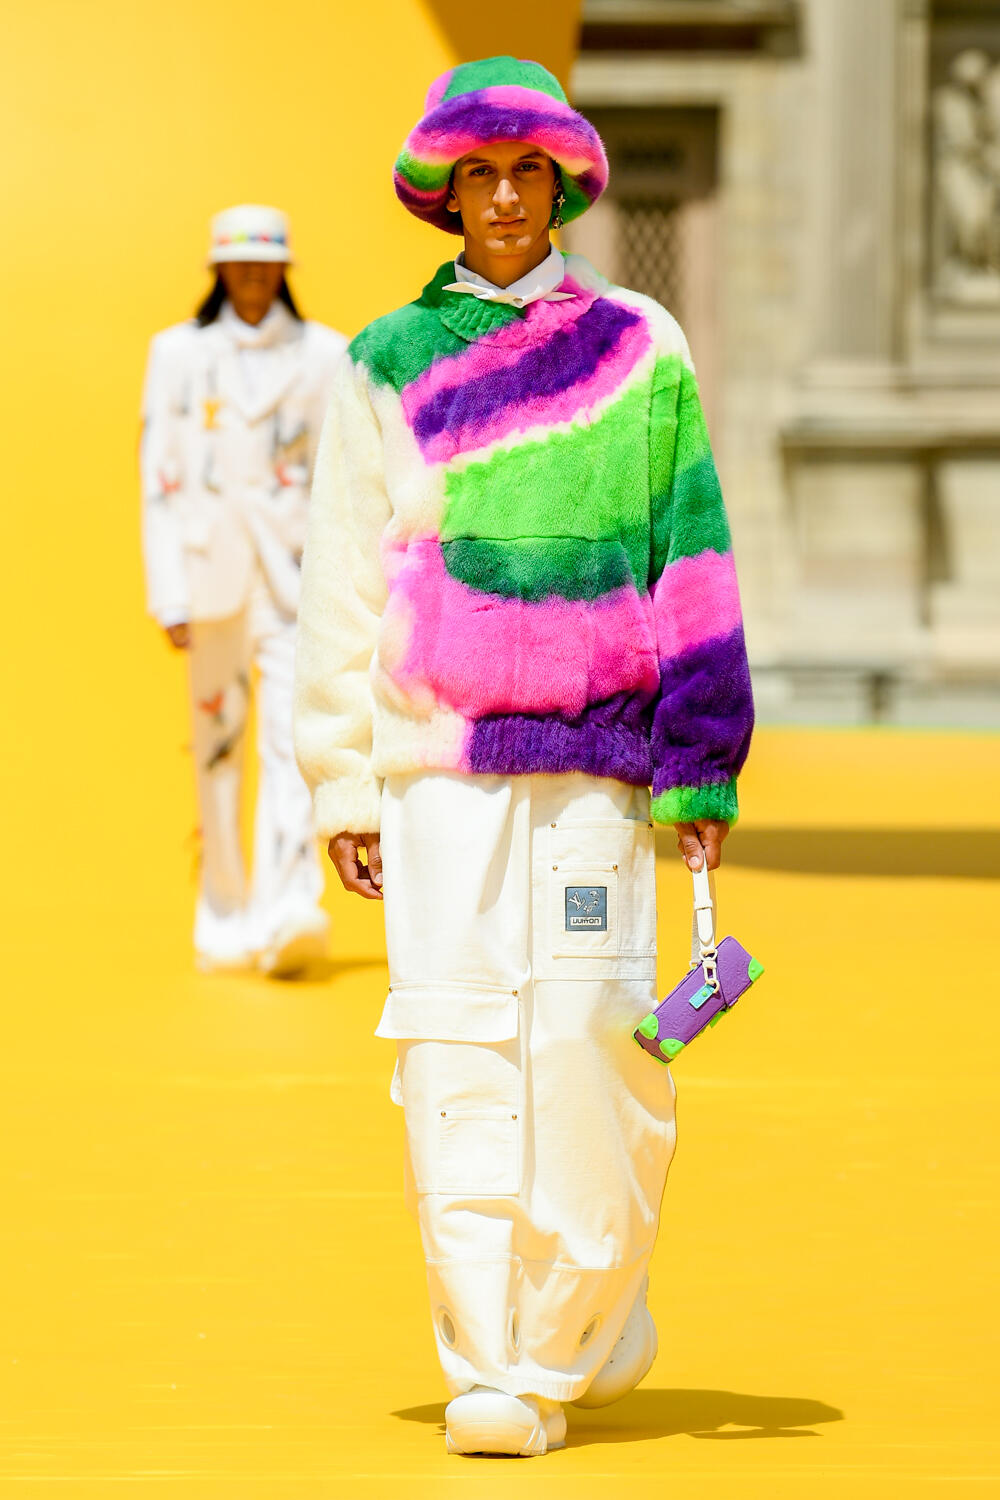 Artesanía y estilo callejero: así es lo nuevo de Louis Vuitton